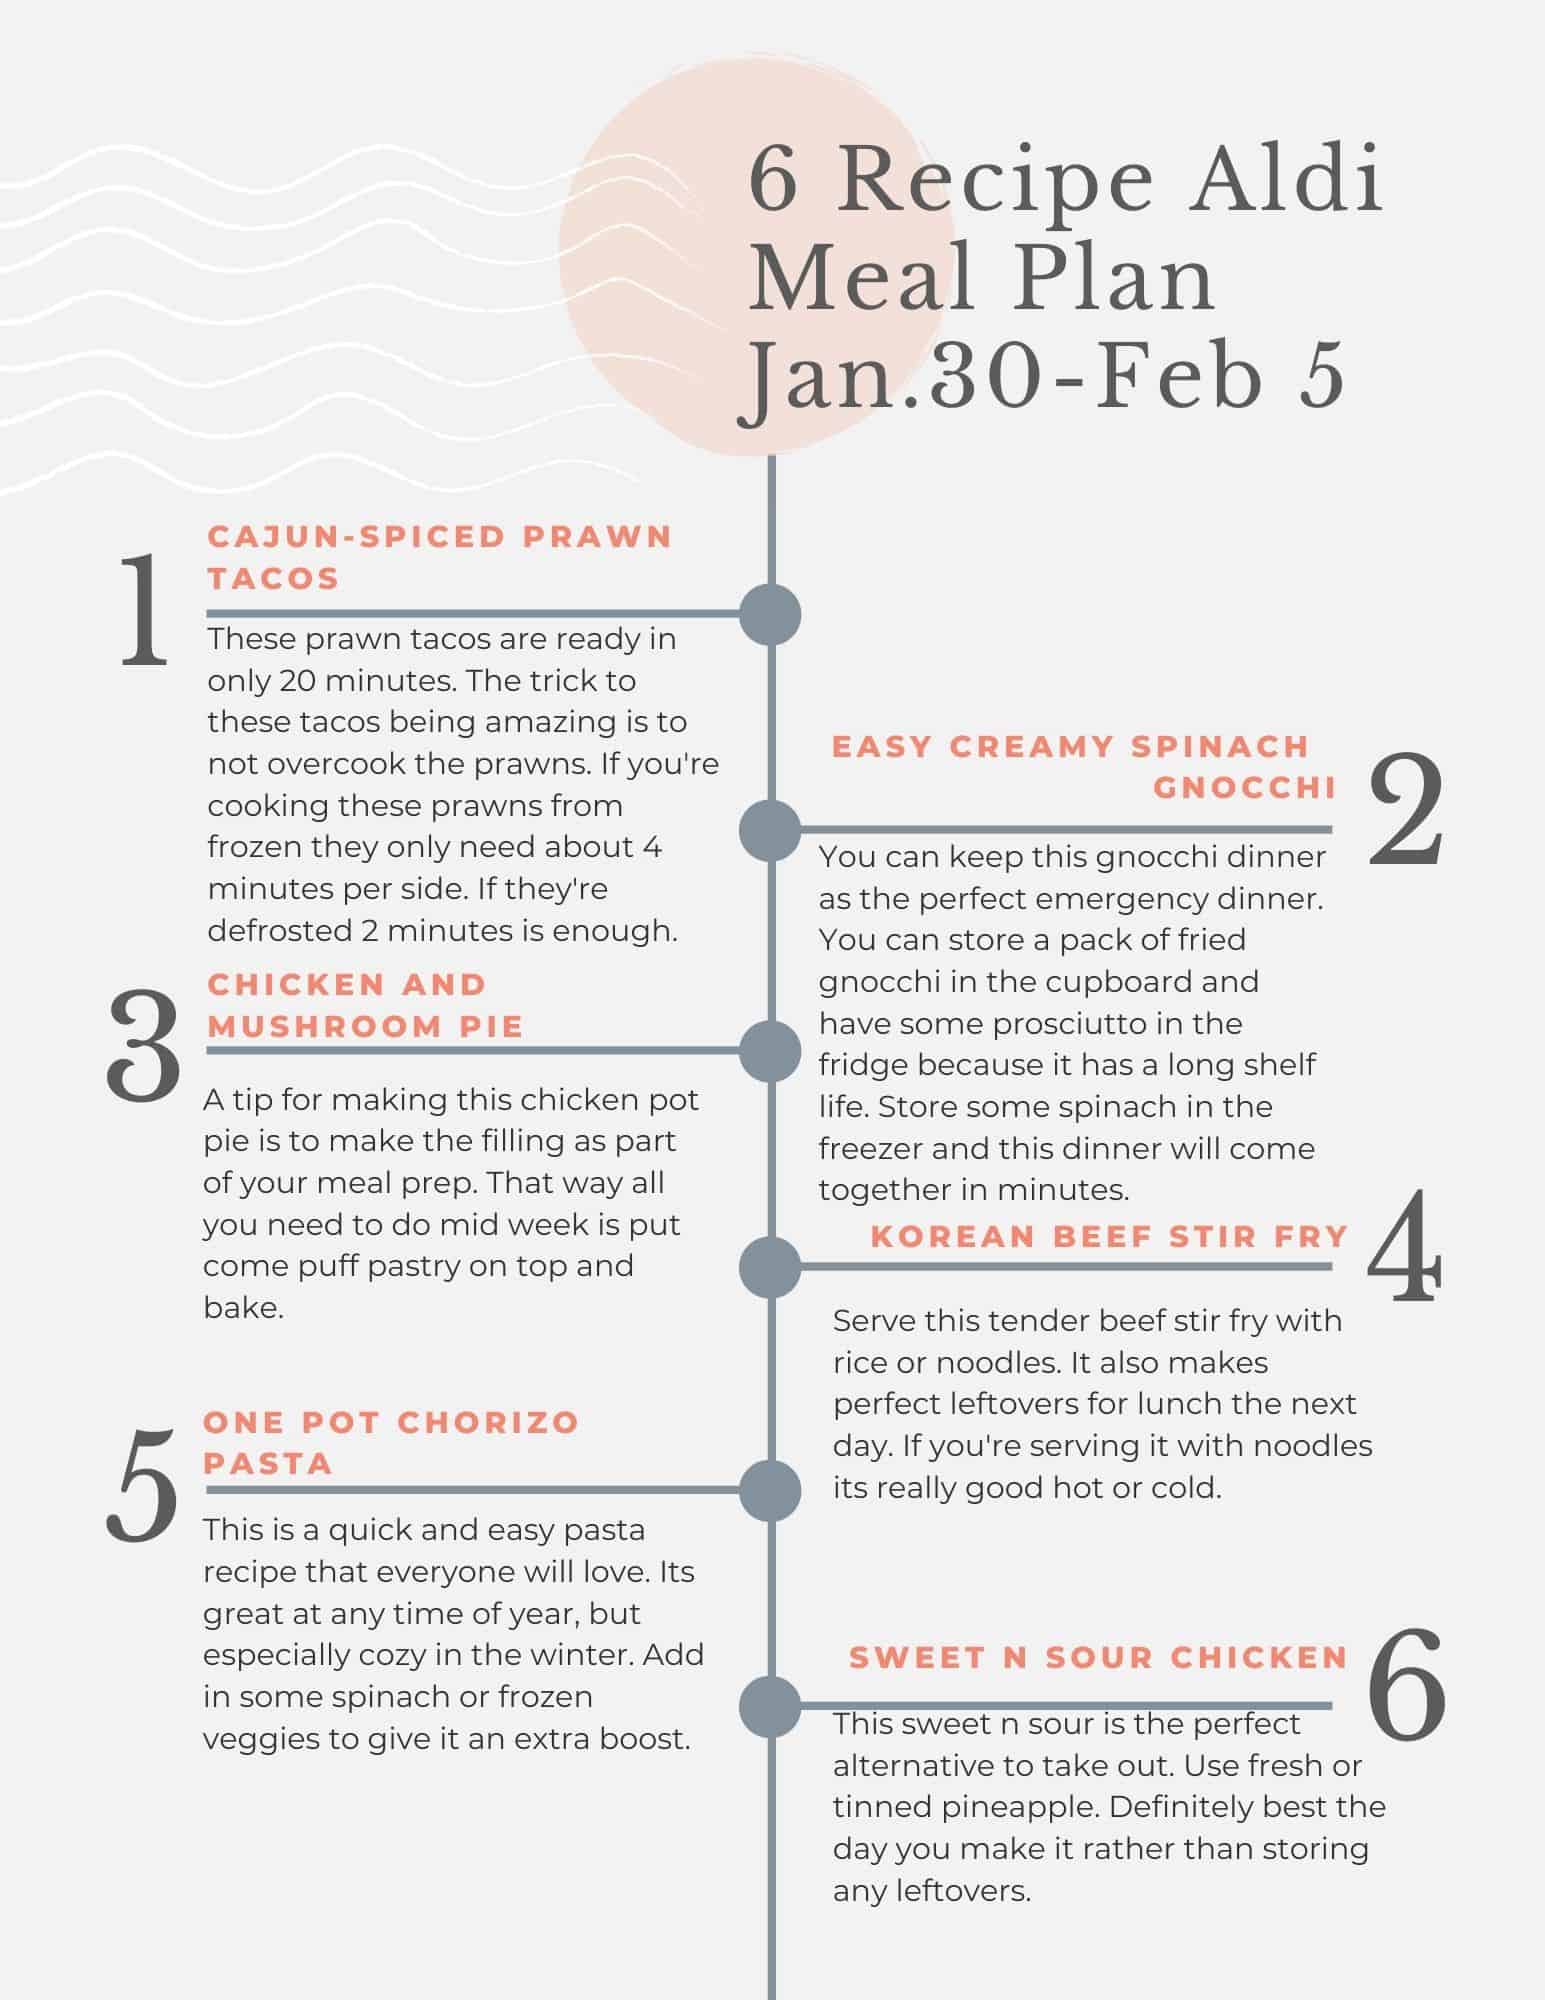 Aldi meal plan tip sheet